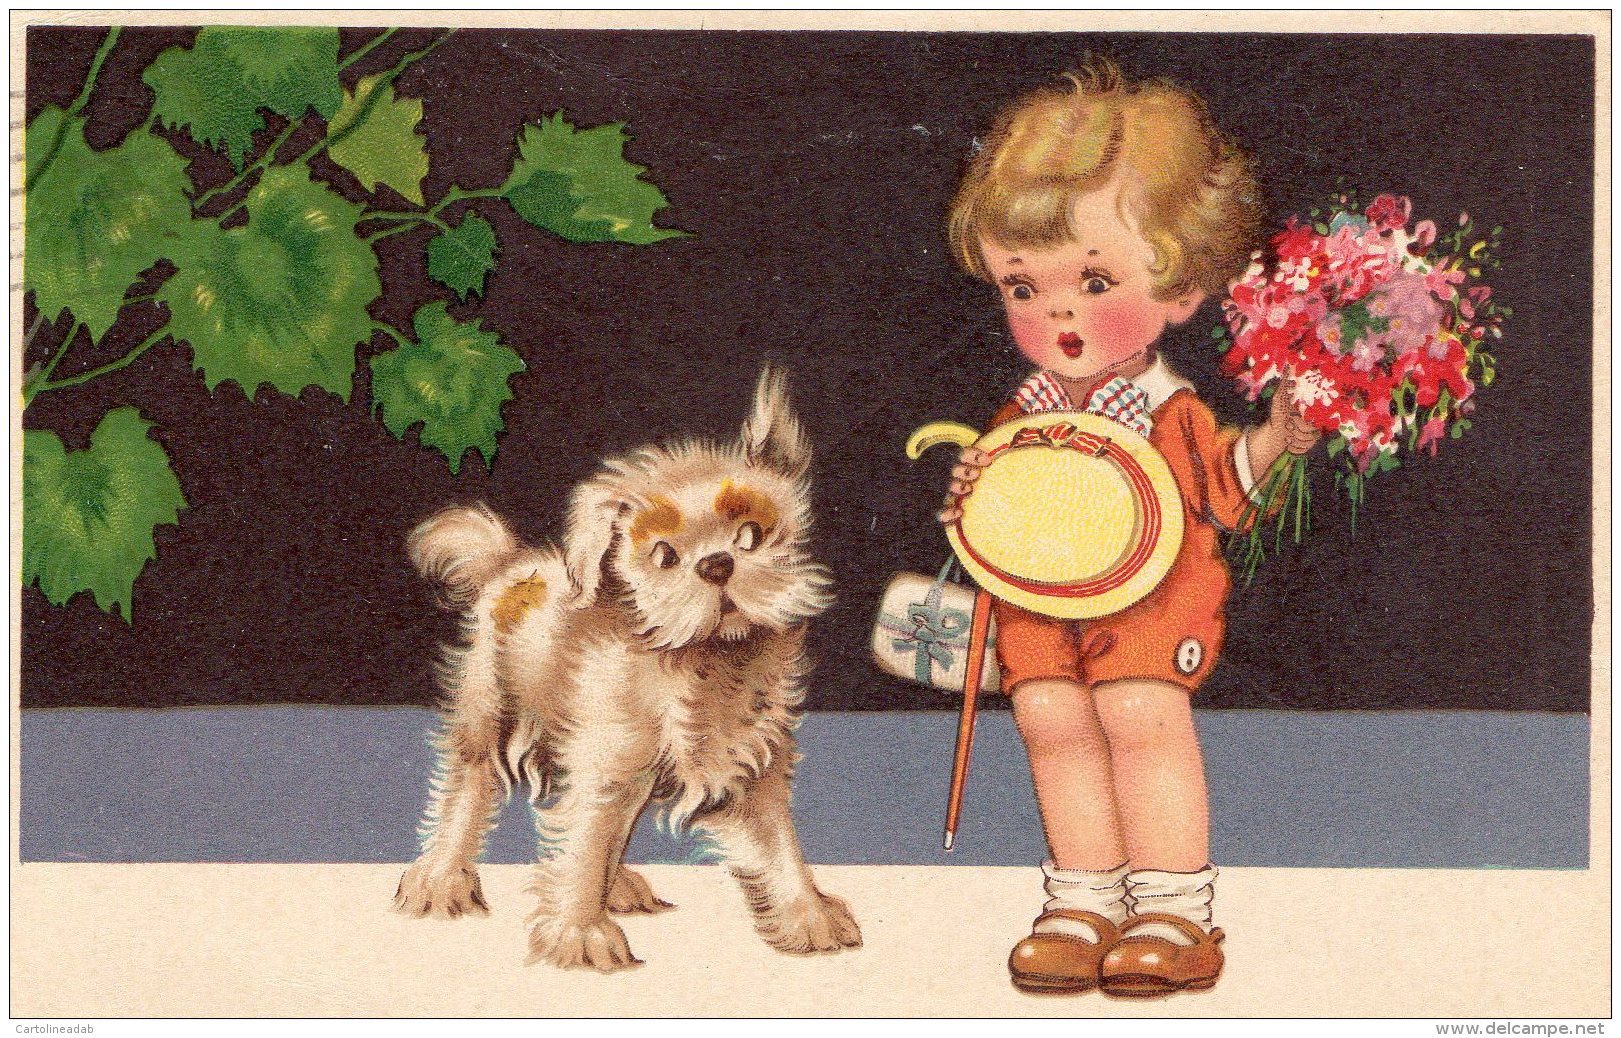 [DC9896] CPA - BAMBINO TIMIDO CON CANE CURIOSO - Viaggiata 1934 - Old Postcard - Cartoline Umoristiche